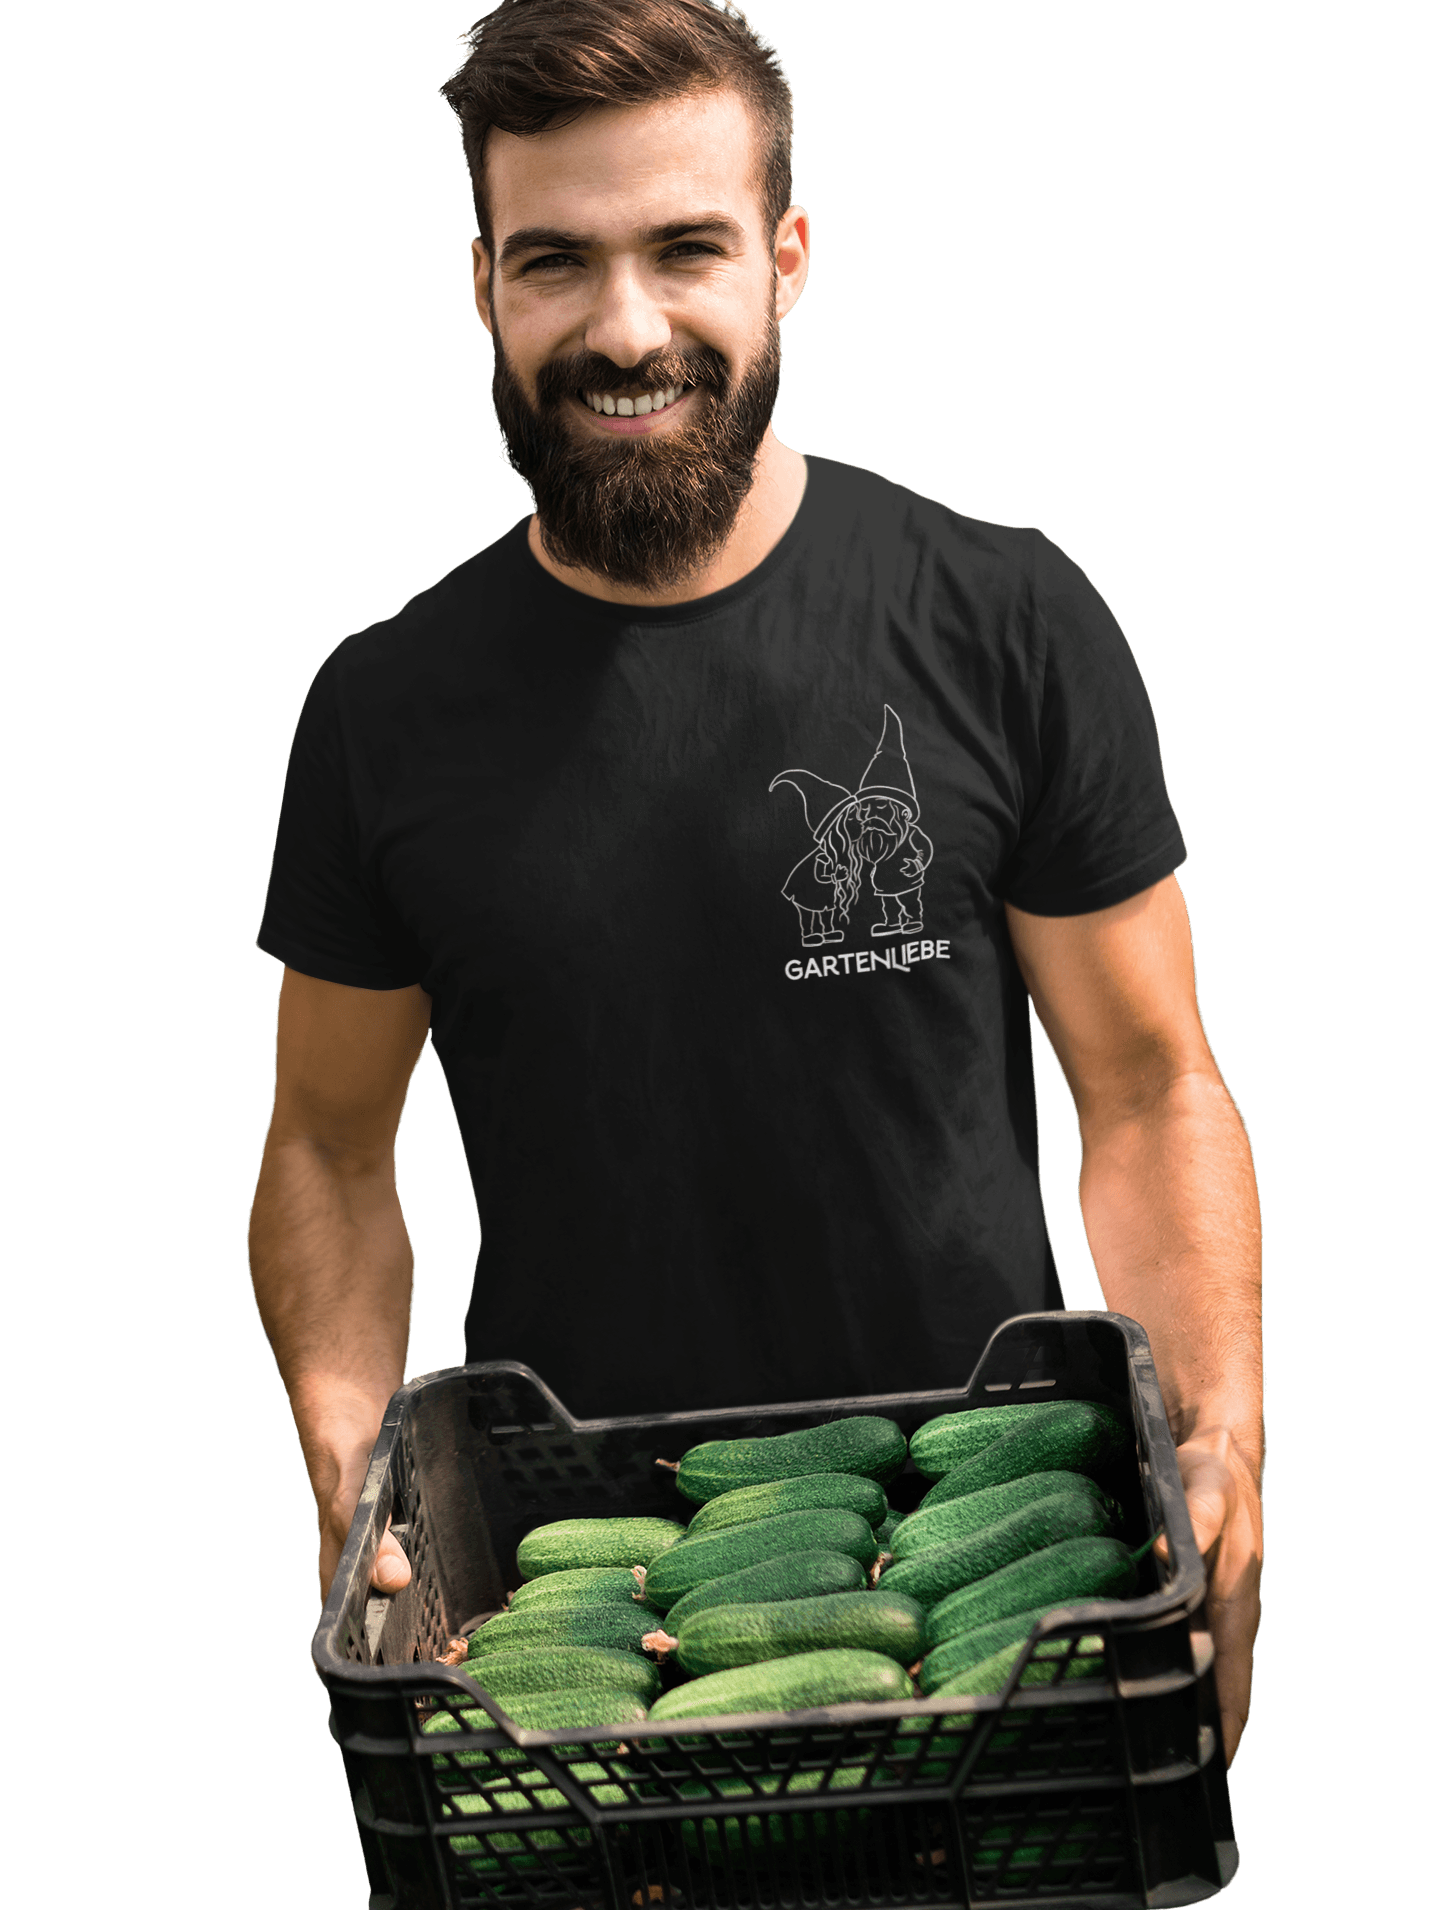 Gartenliebe (Brusttaschenmotiv) - Unisex Shirt - PflanzenFan